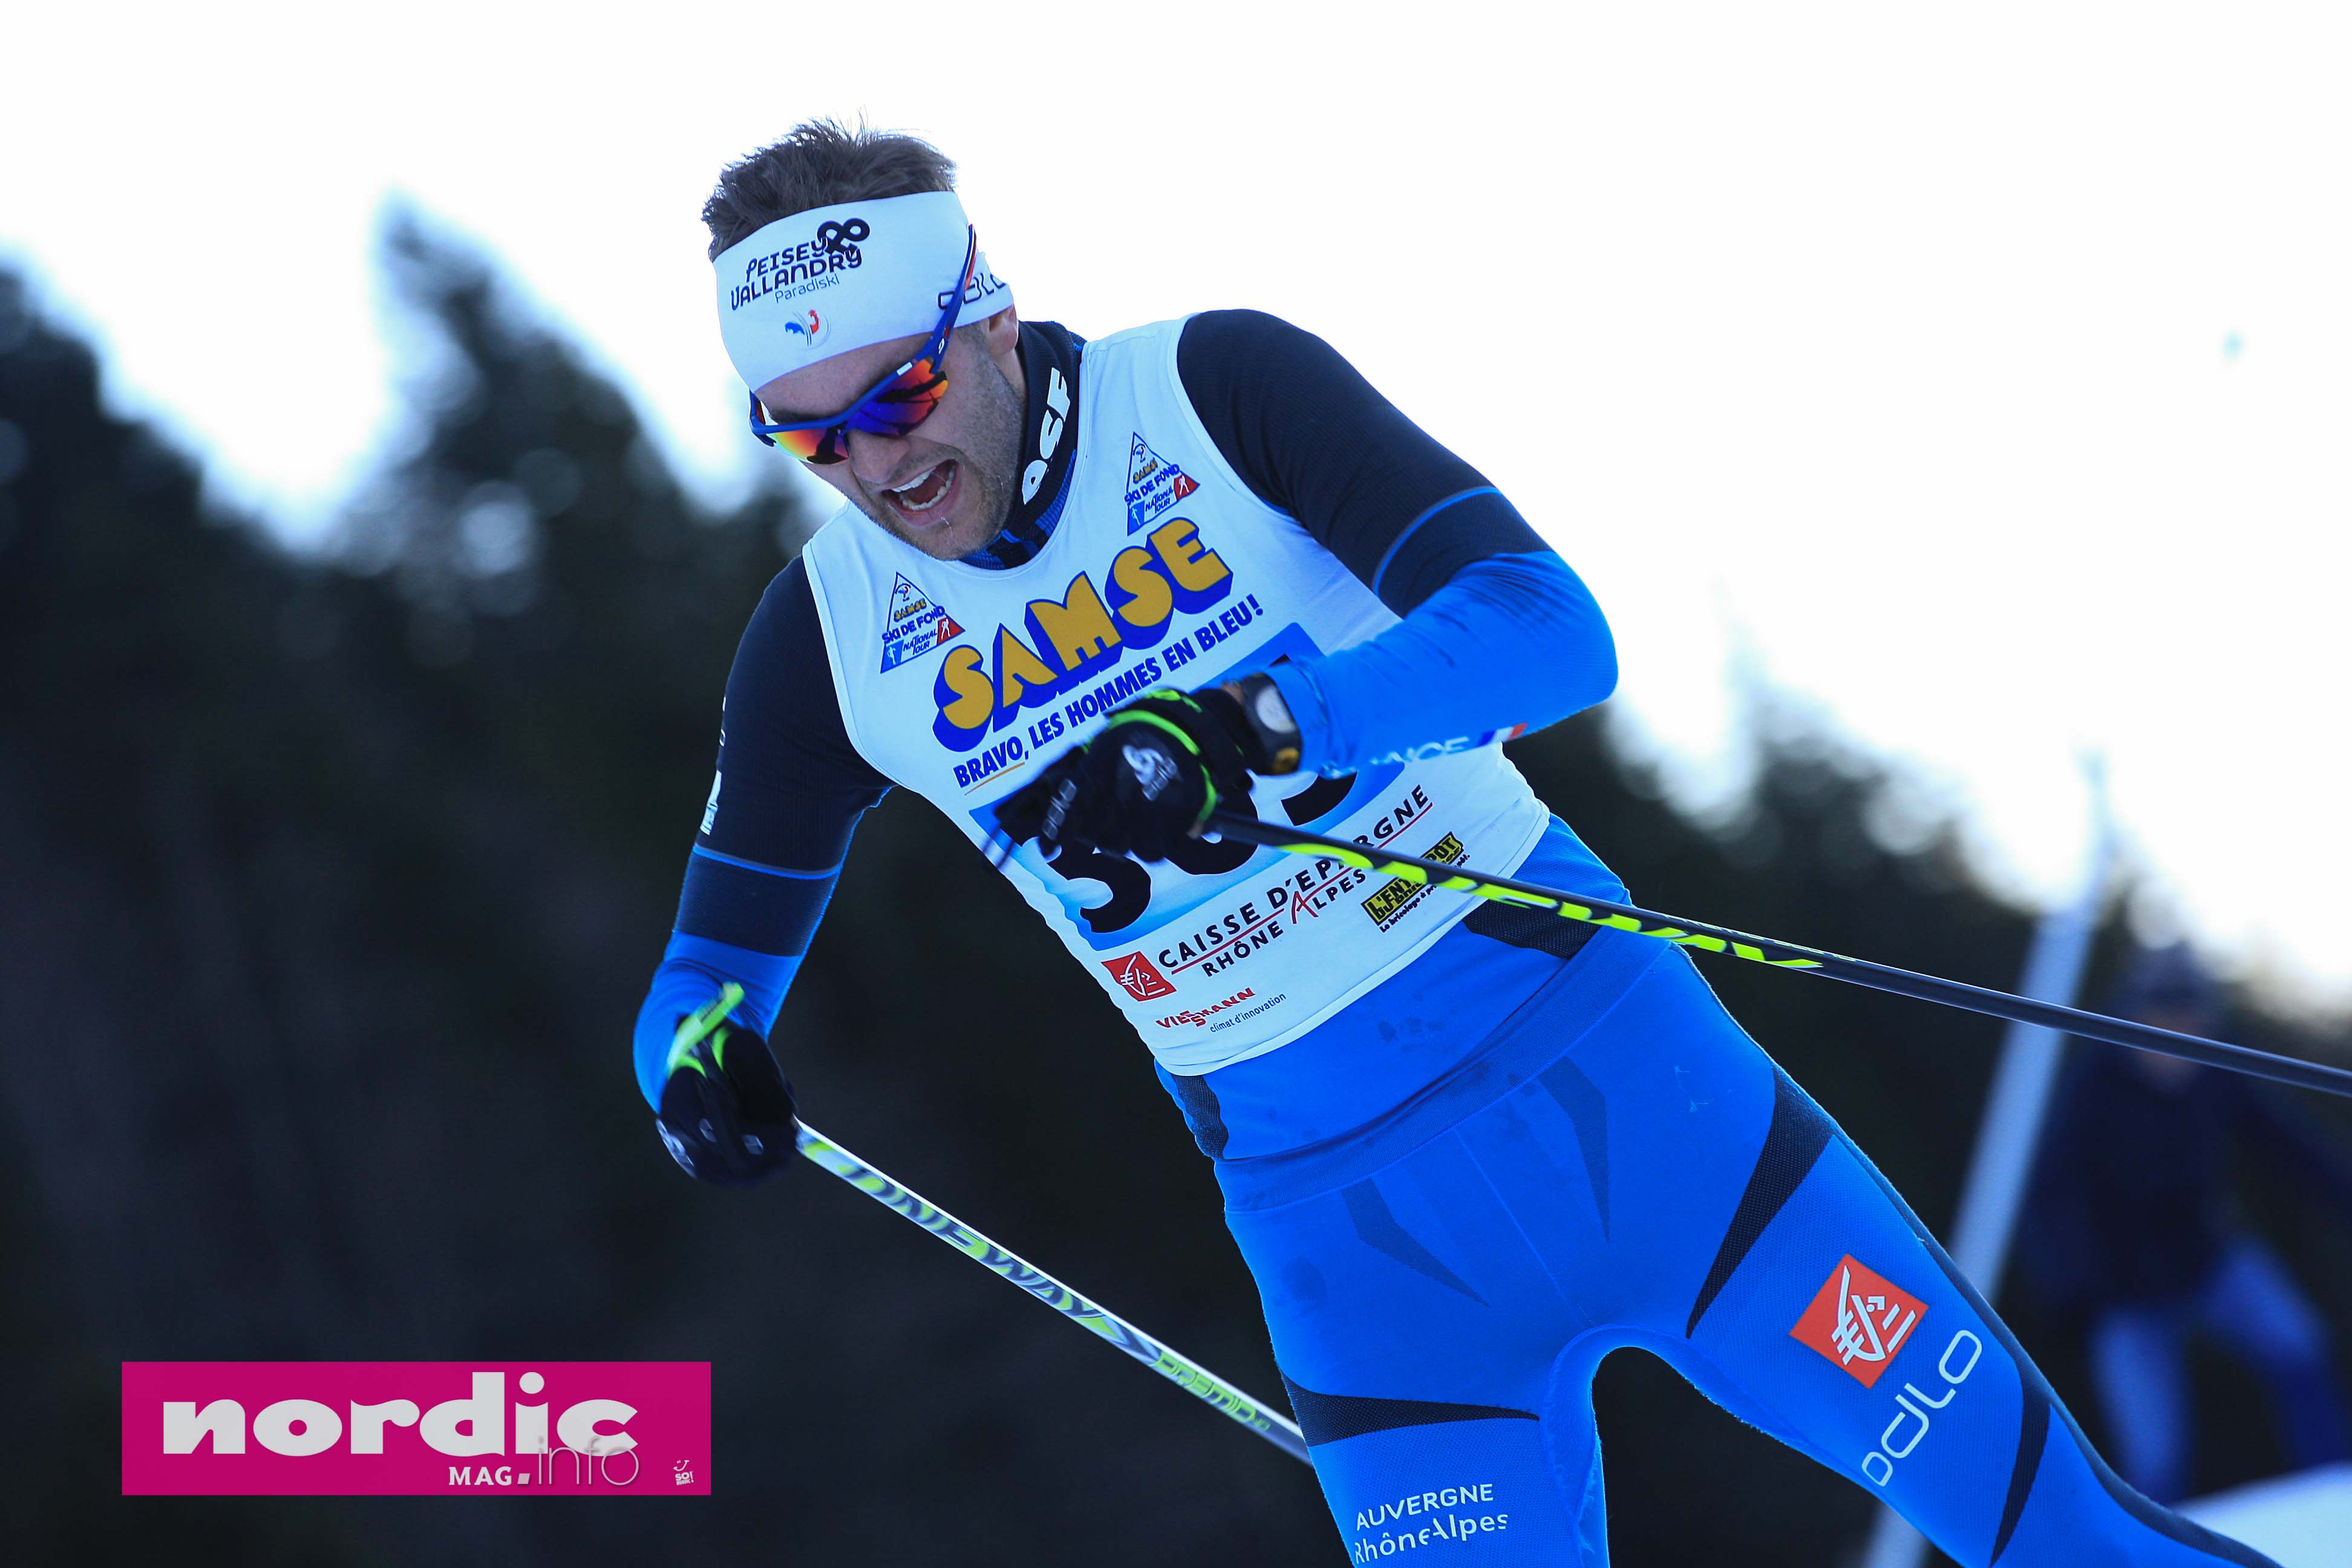 SKI DE FOND - Le Savoyard Alexandre Pouye, jusqu'alors membre de l'équipe de France de ski de fond, veut rebondir en intégrant le Team nordique Crédit Agricole. Avec un objectif clair : retrouver la coupe du monde.